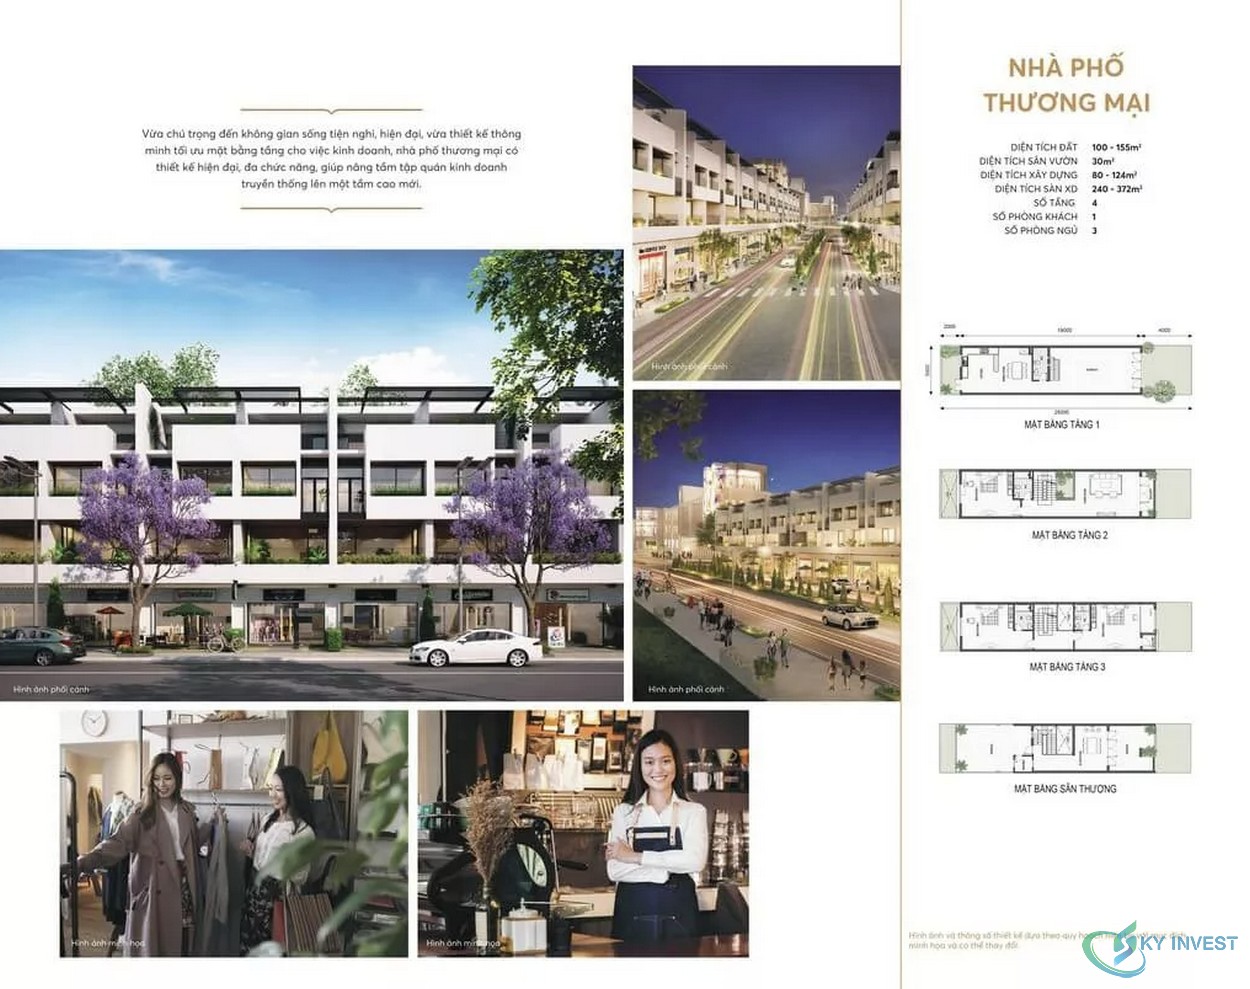 Thiết kế nhà phố thương mại dự án King Bay Nhơn Trạch